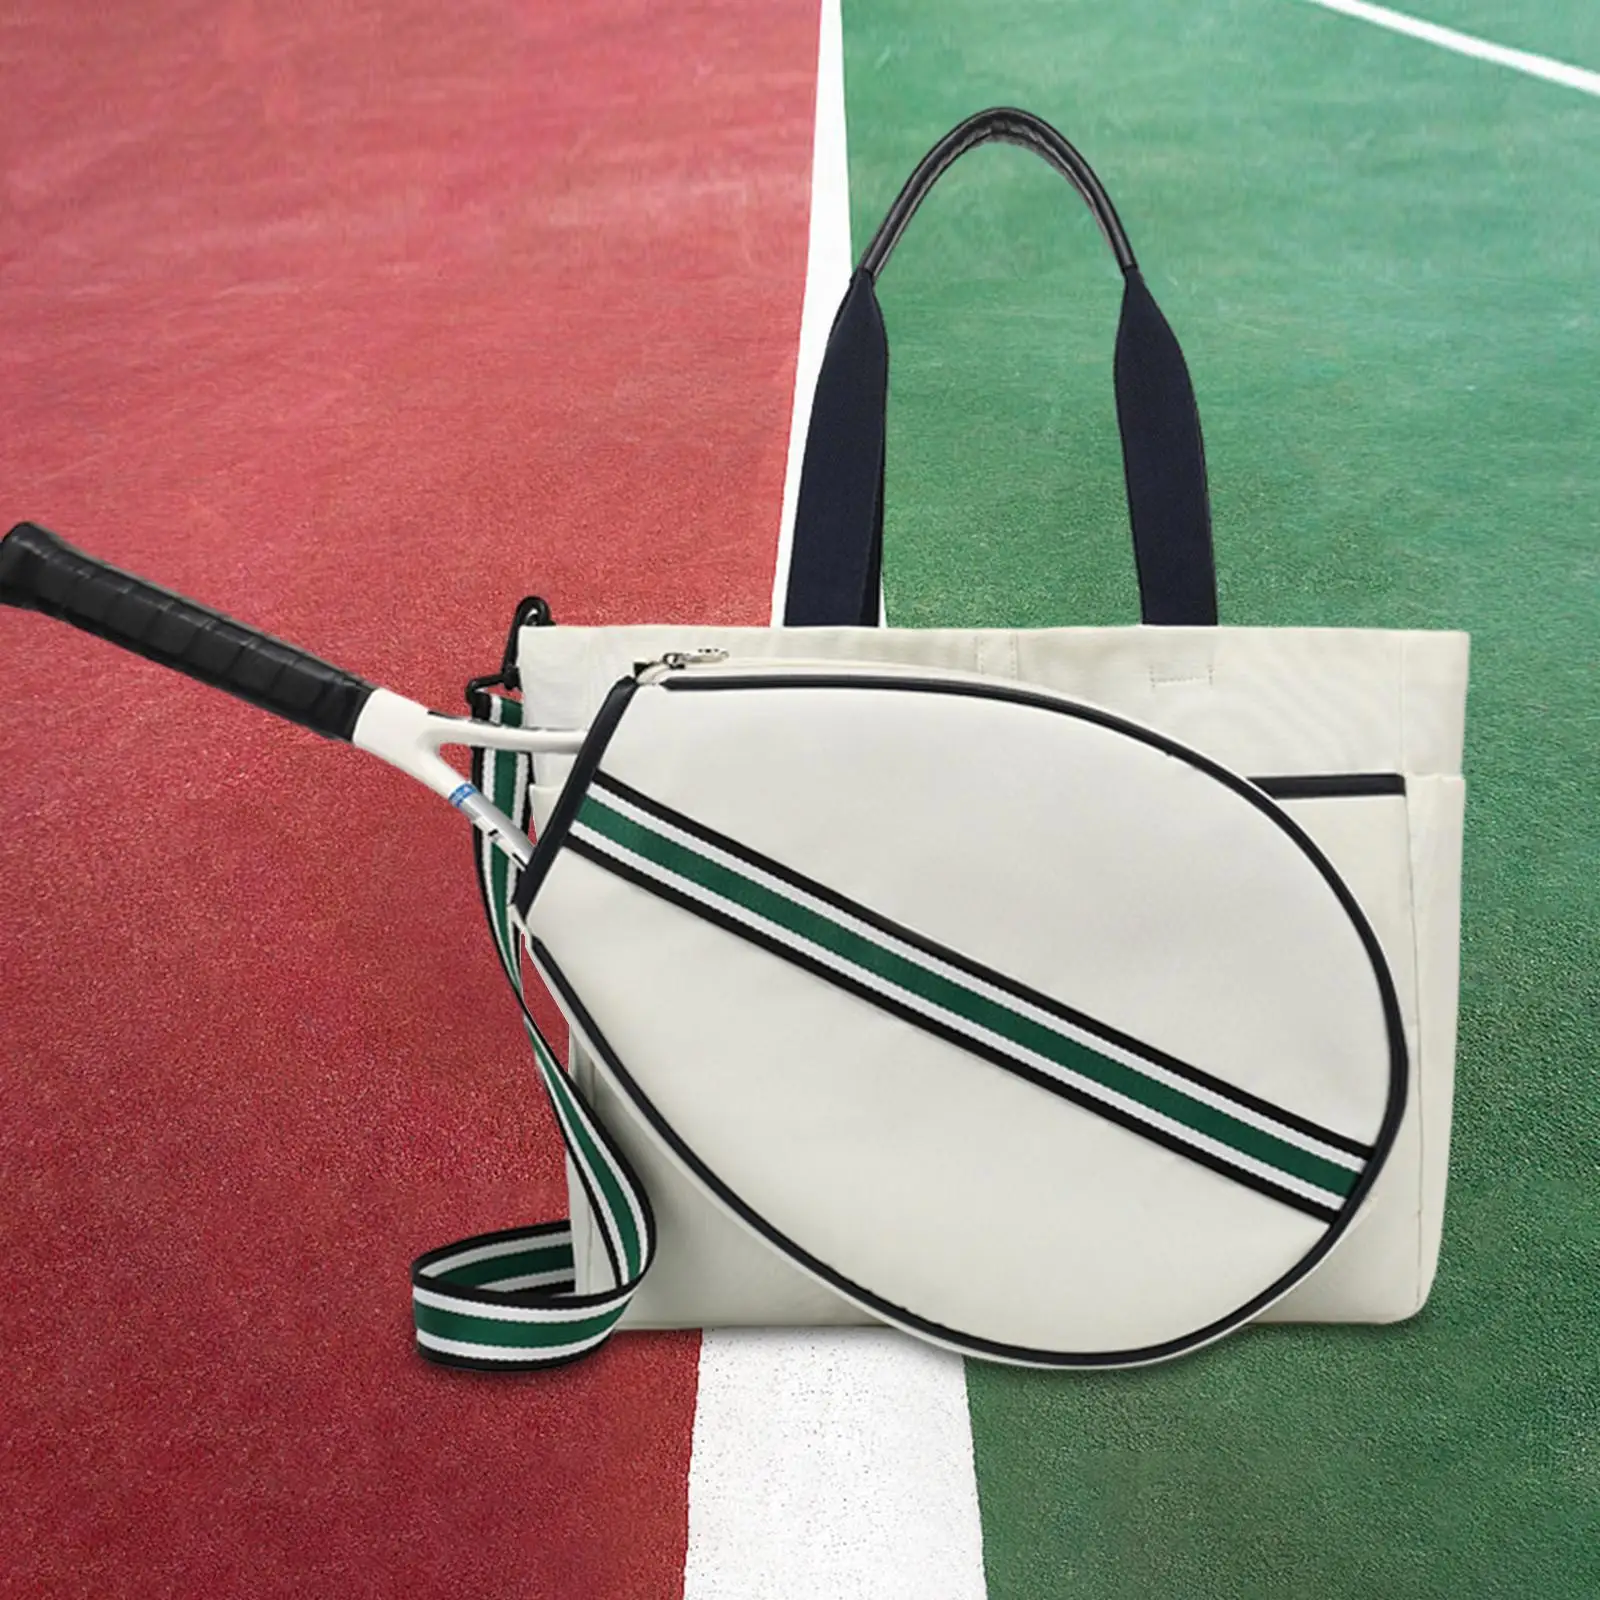 Tennis Tote Bag Rucksack with Detachable Shoulder Strap Detachable Racquet Cover Multipurpose for Women Men Tennis Racquet Bag